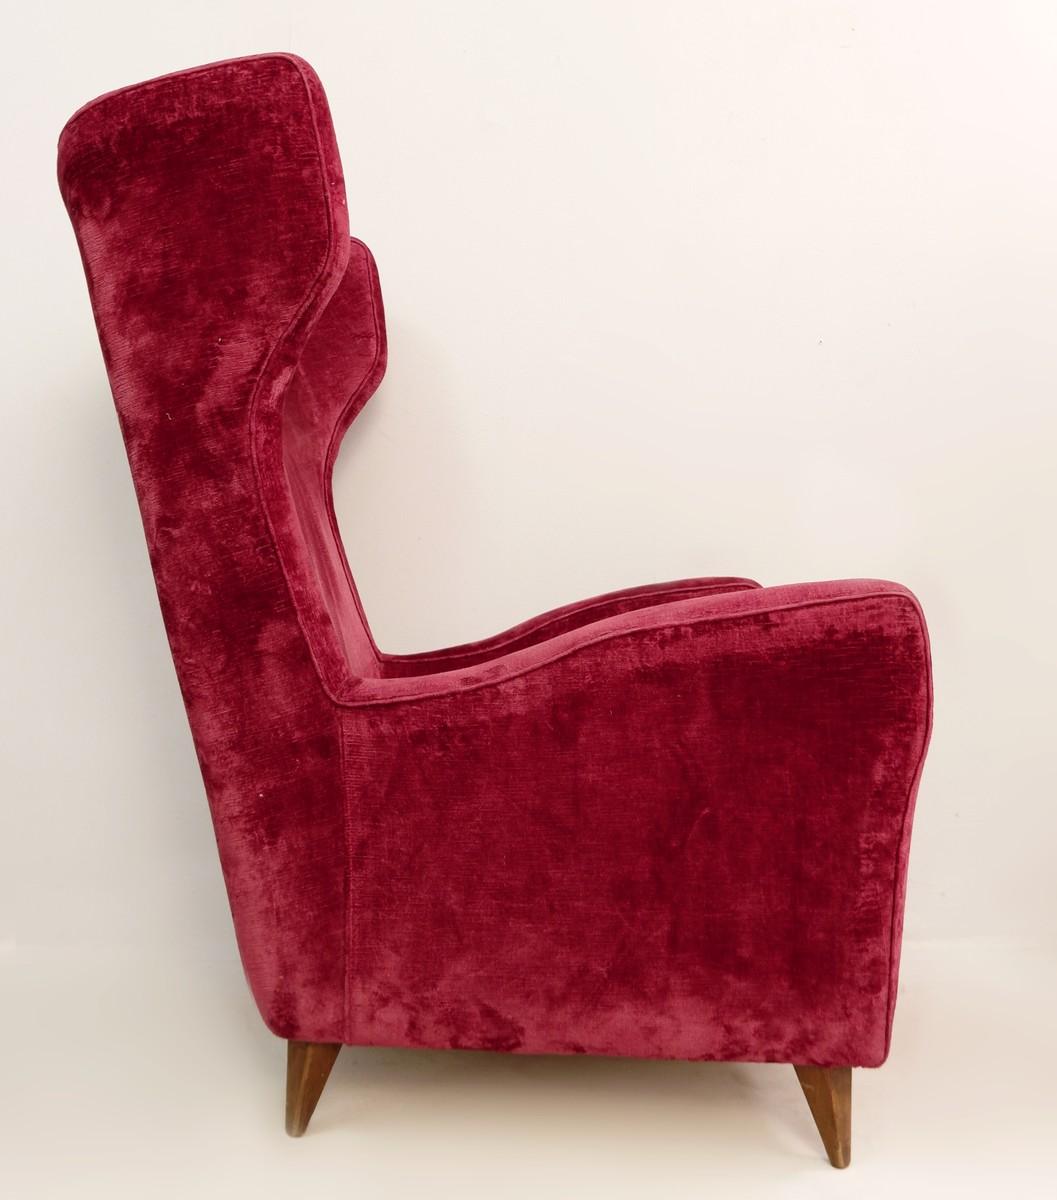 Large Italian high back red velvet armchair, 1950s.